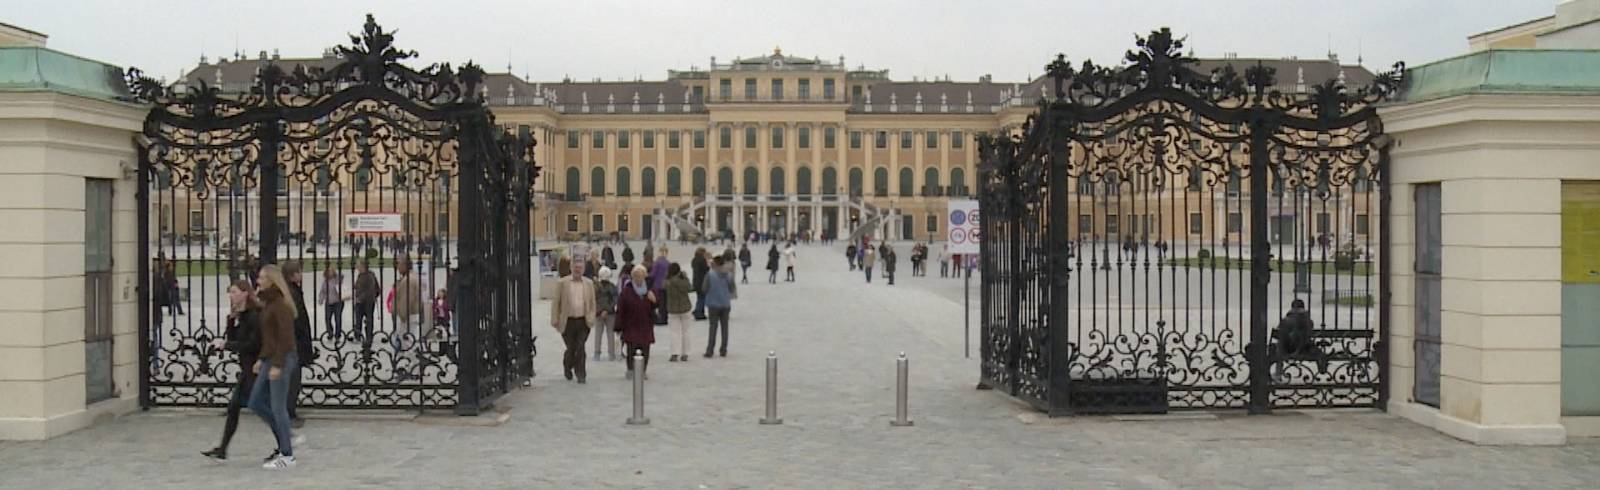 Wiener Tourismus weiter in der Krise